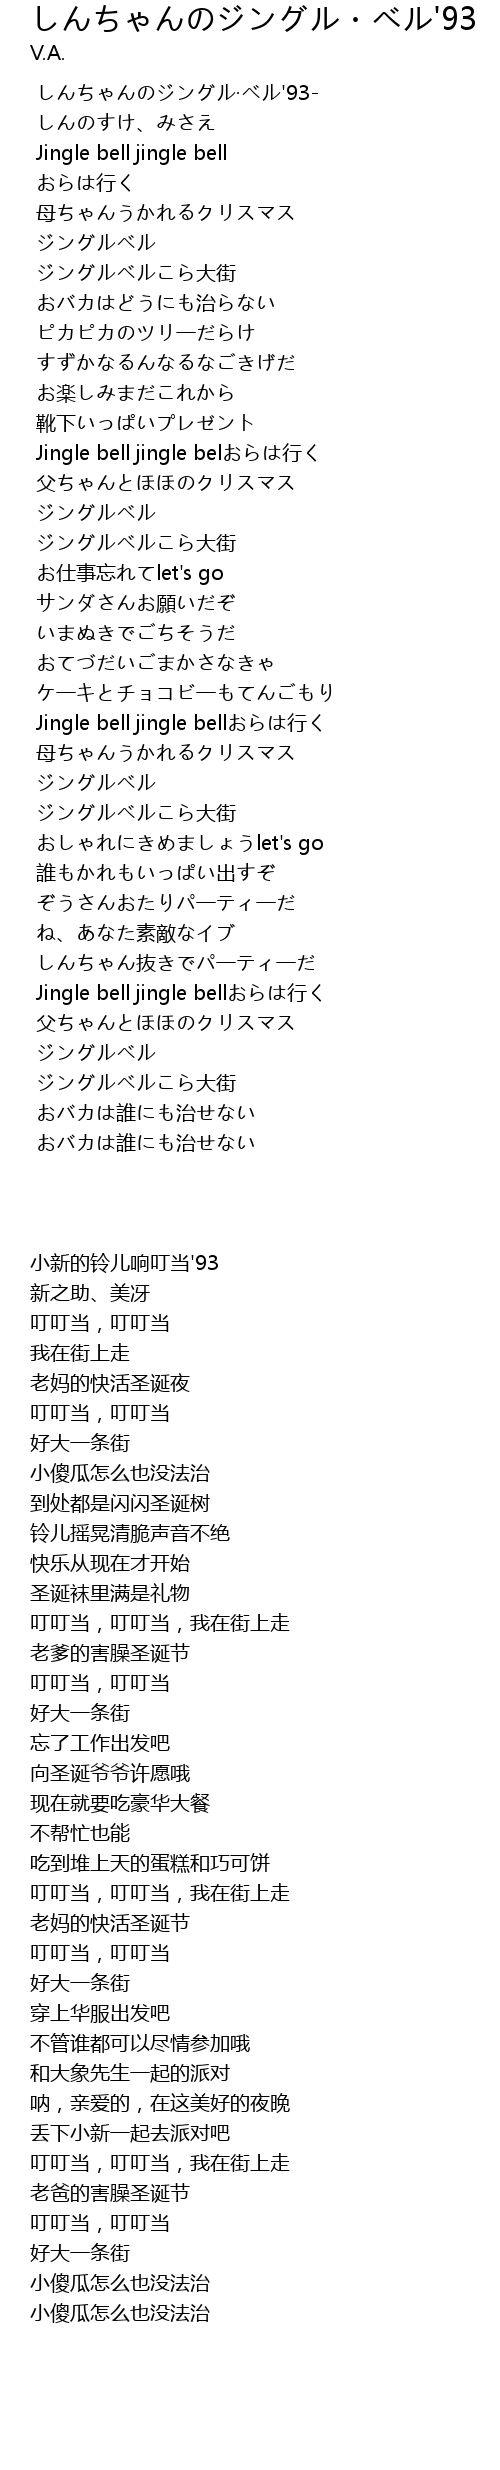 しんちゃんのジングル ベル 93 93 lyrics follow lyrics